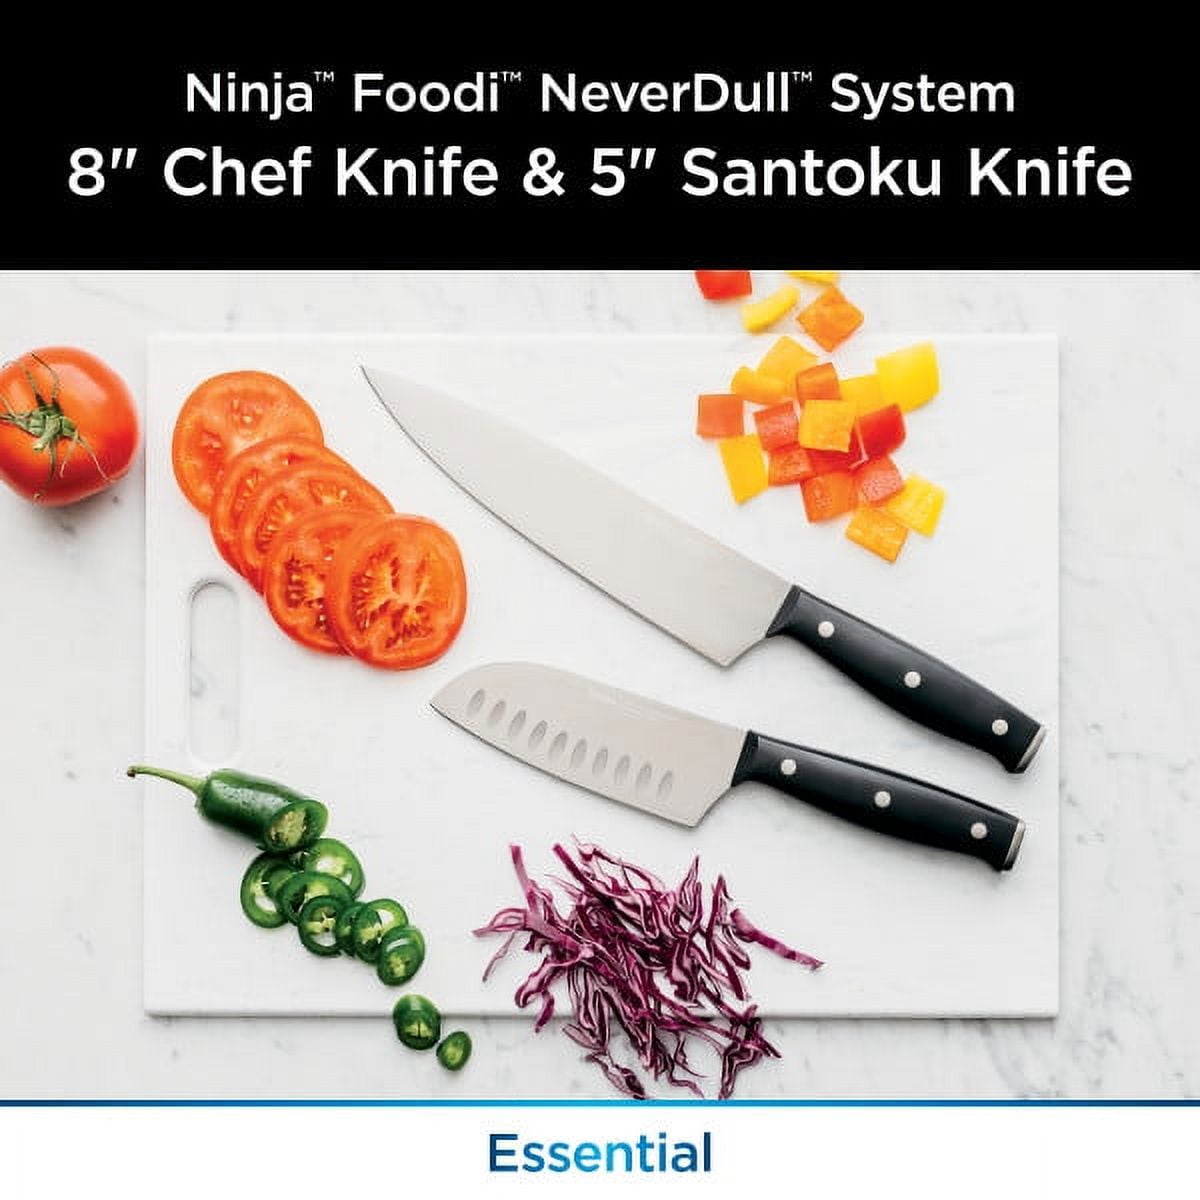 Las mejores ofertas en Ninja cubiertos, cuchillos y cubertería